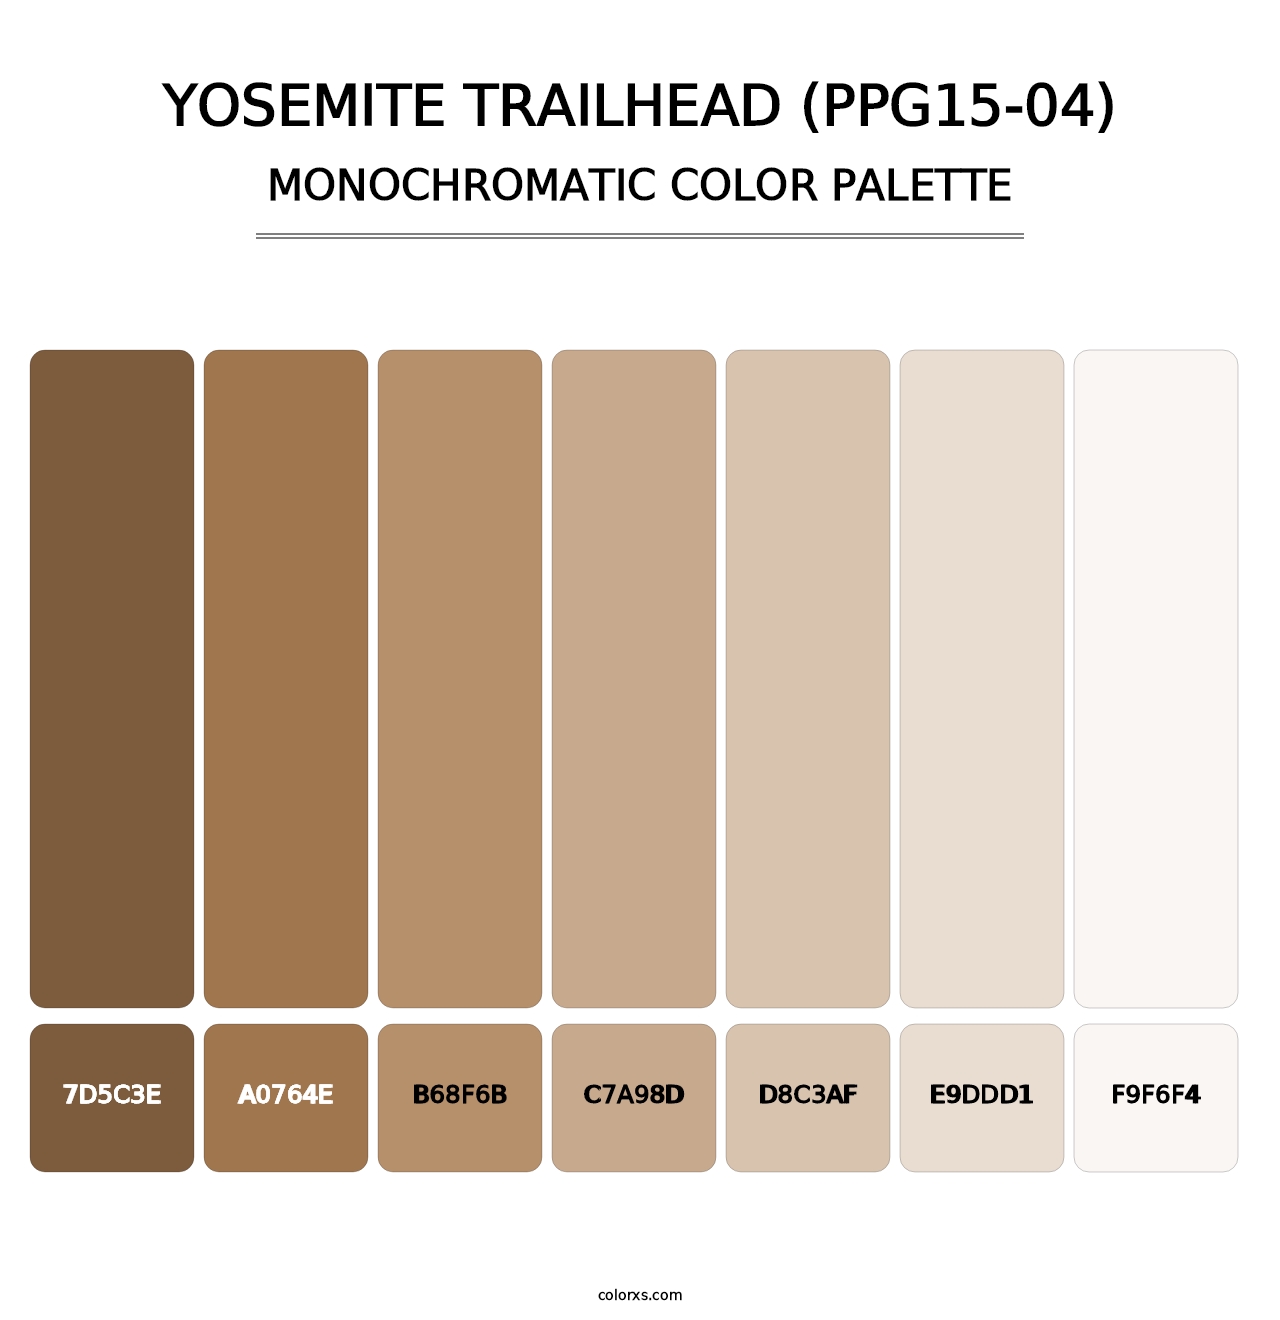 Yosemite Trailhead (PPG15-04) - Monochromatic Color Palette